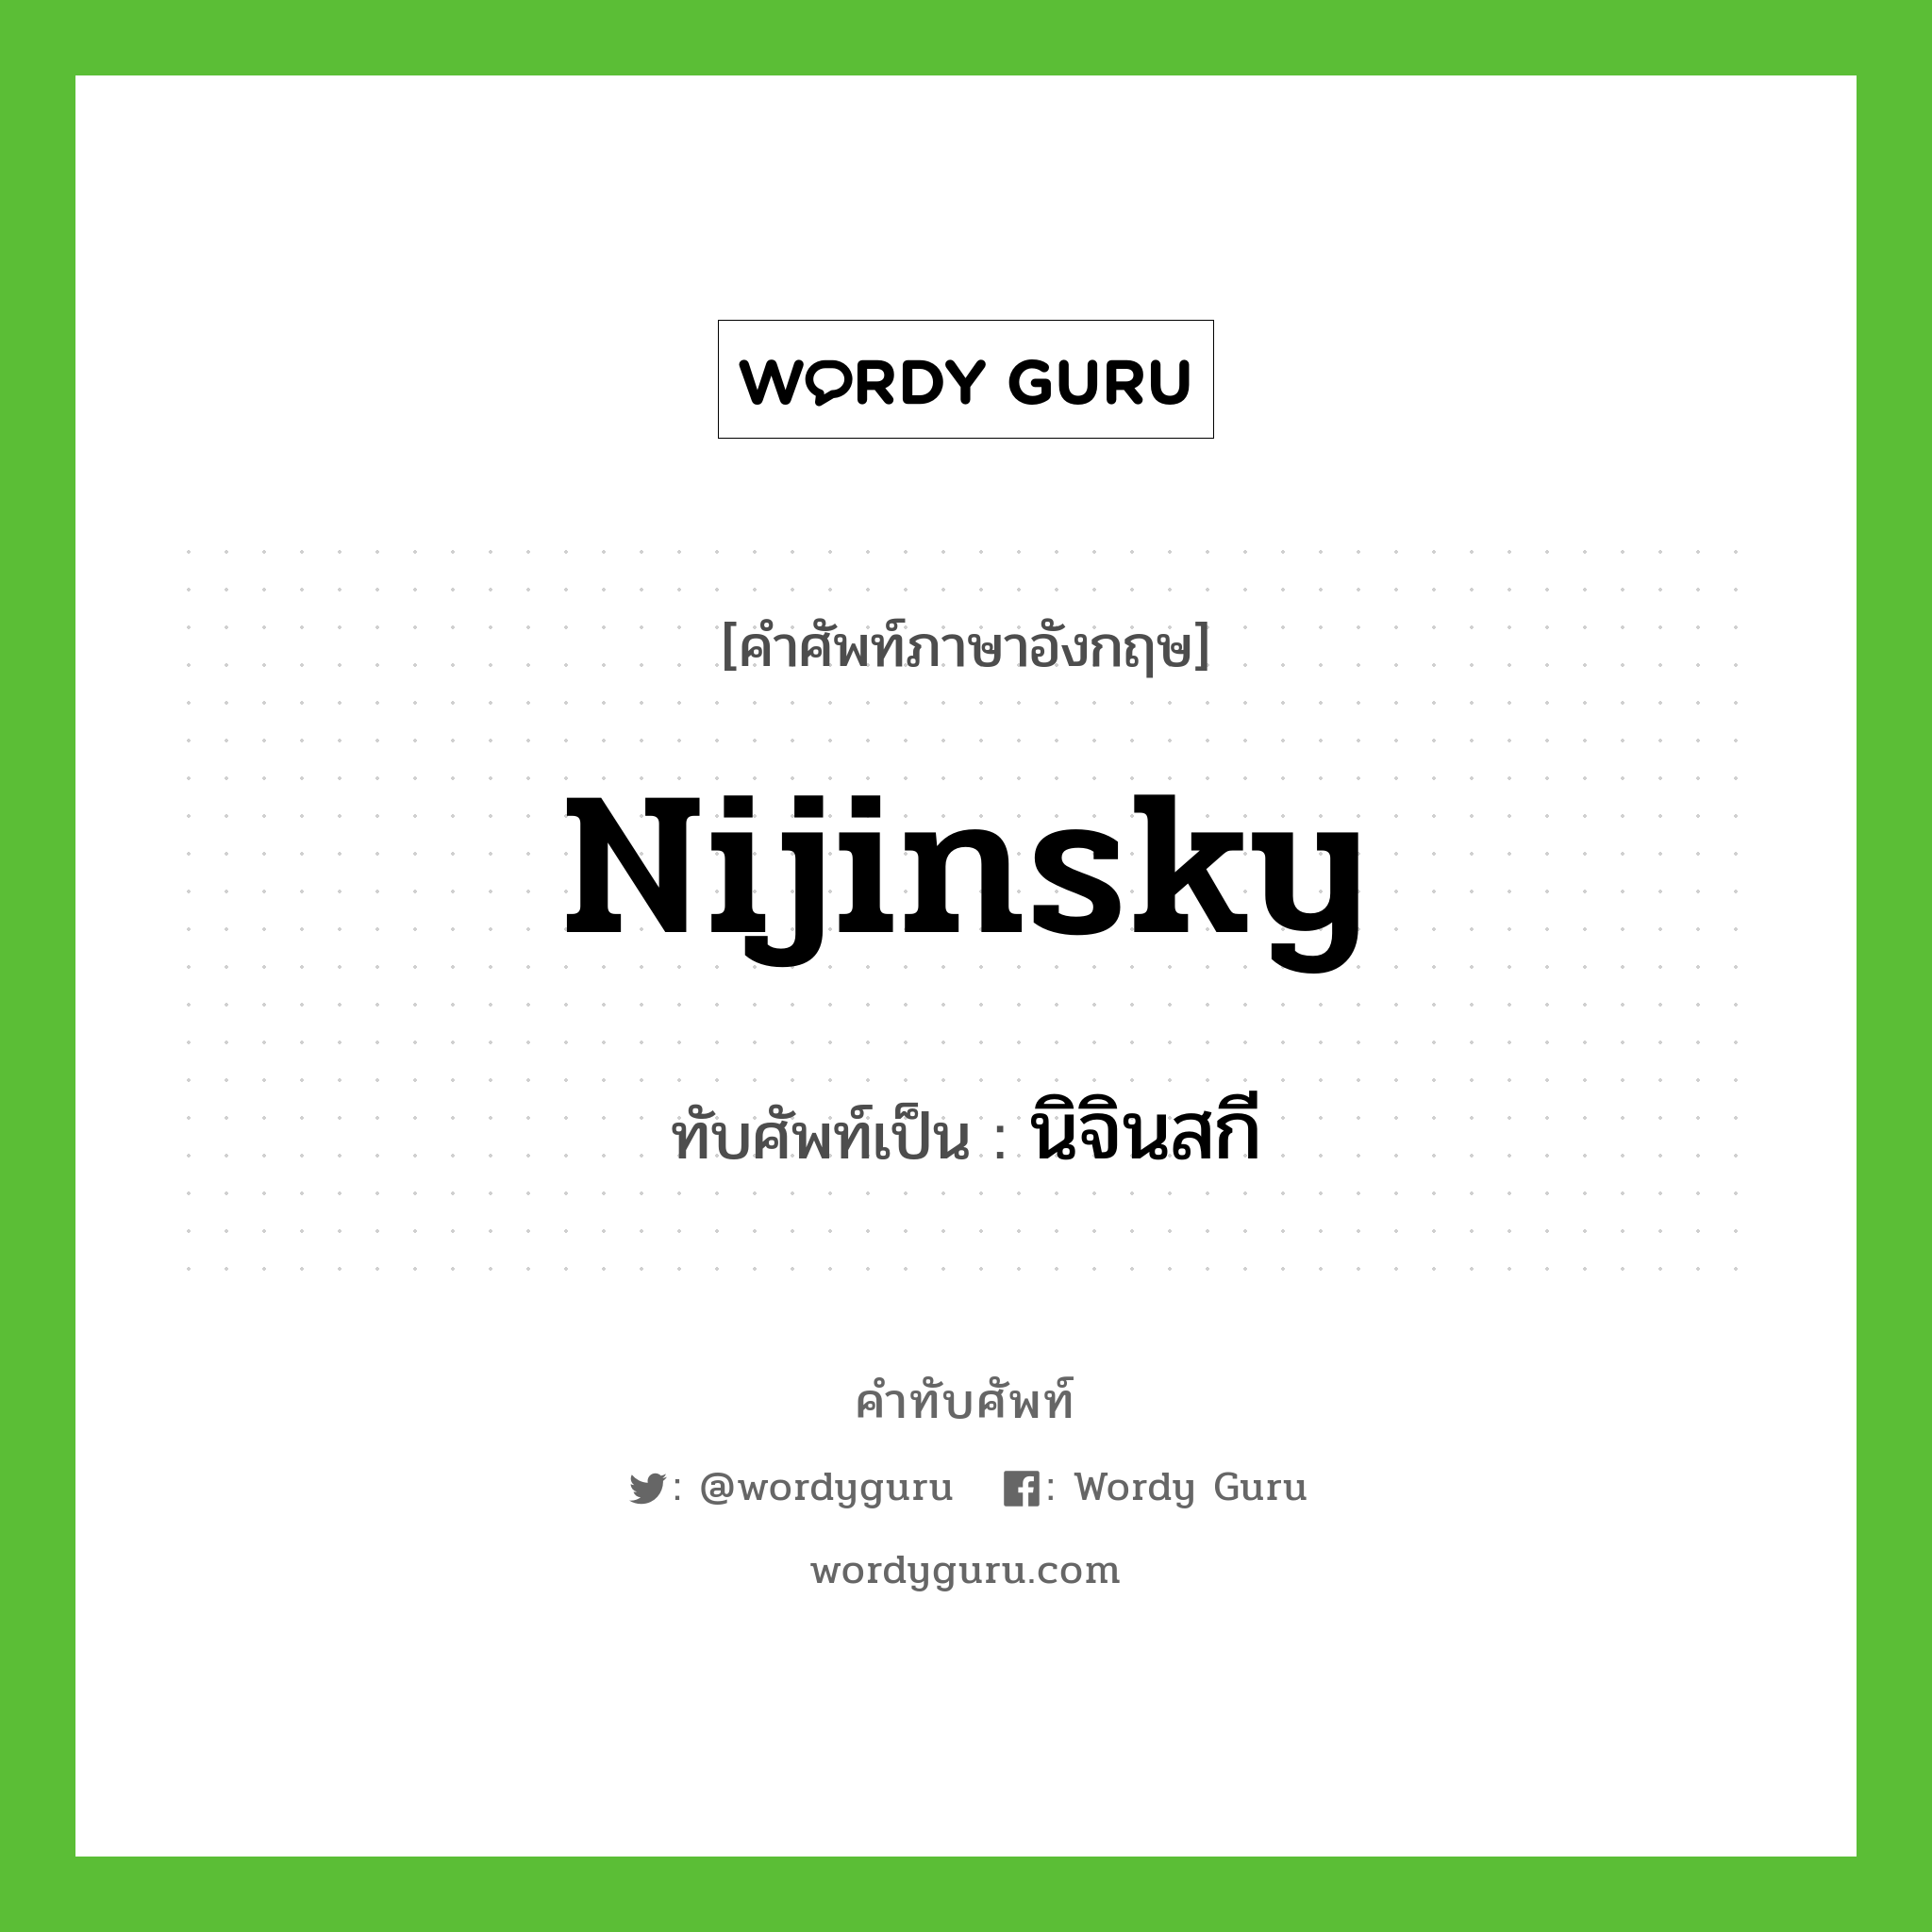 Nijinsky เขียนเป็นคำไทยว่าอะไร?, คำศัพท์ภาษาอังกฤษ Nijinsky ทับศัพท์เป็น นิจินสกี